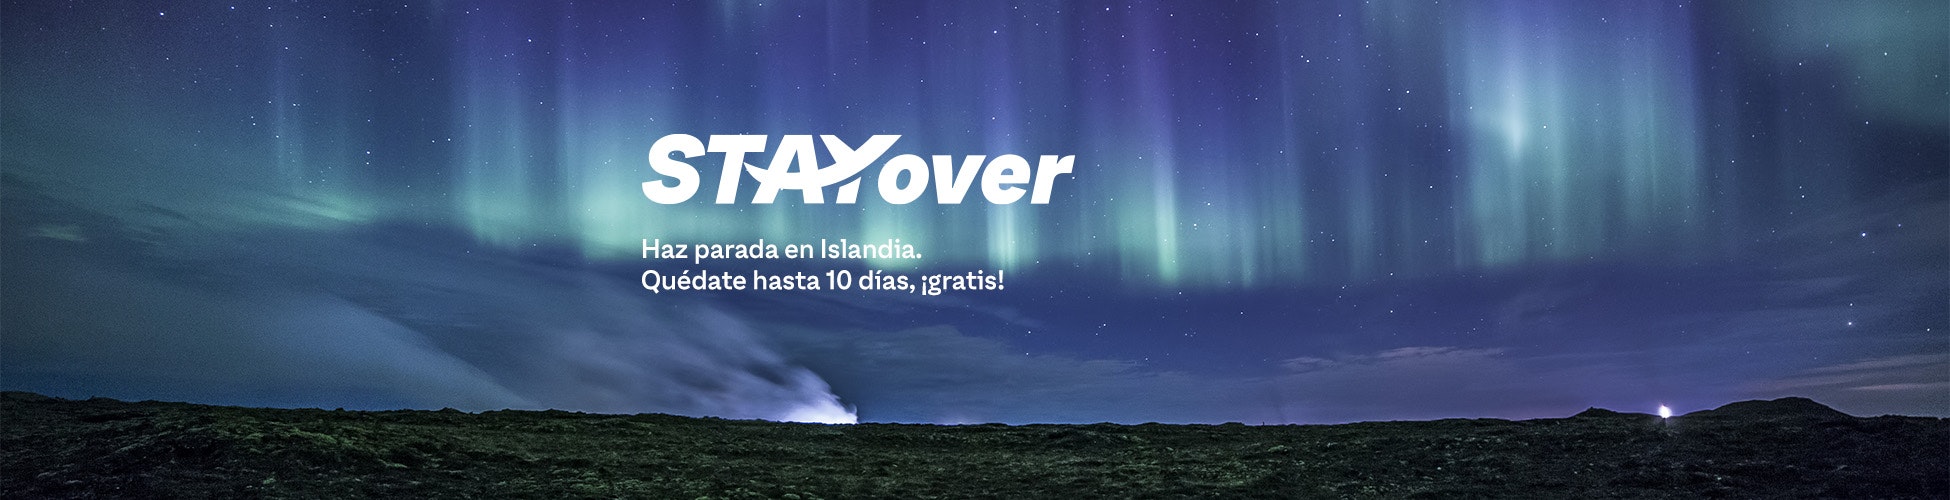 Stayover- Haz parada en Islandia. Quédate hasta 10 días, ¡gratis!
